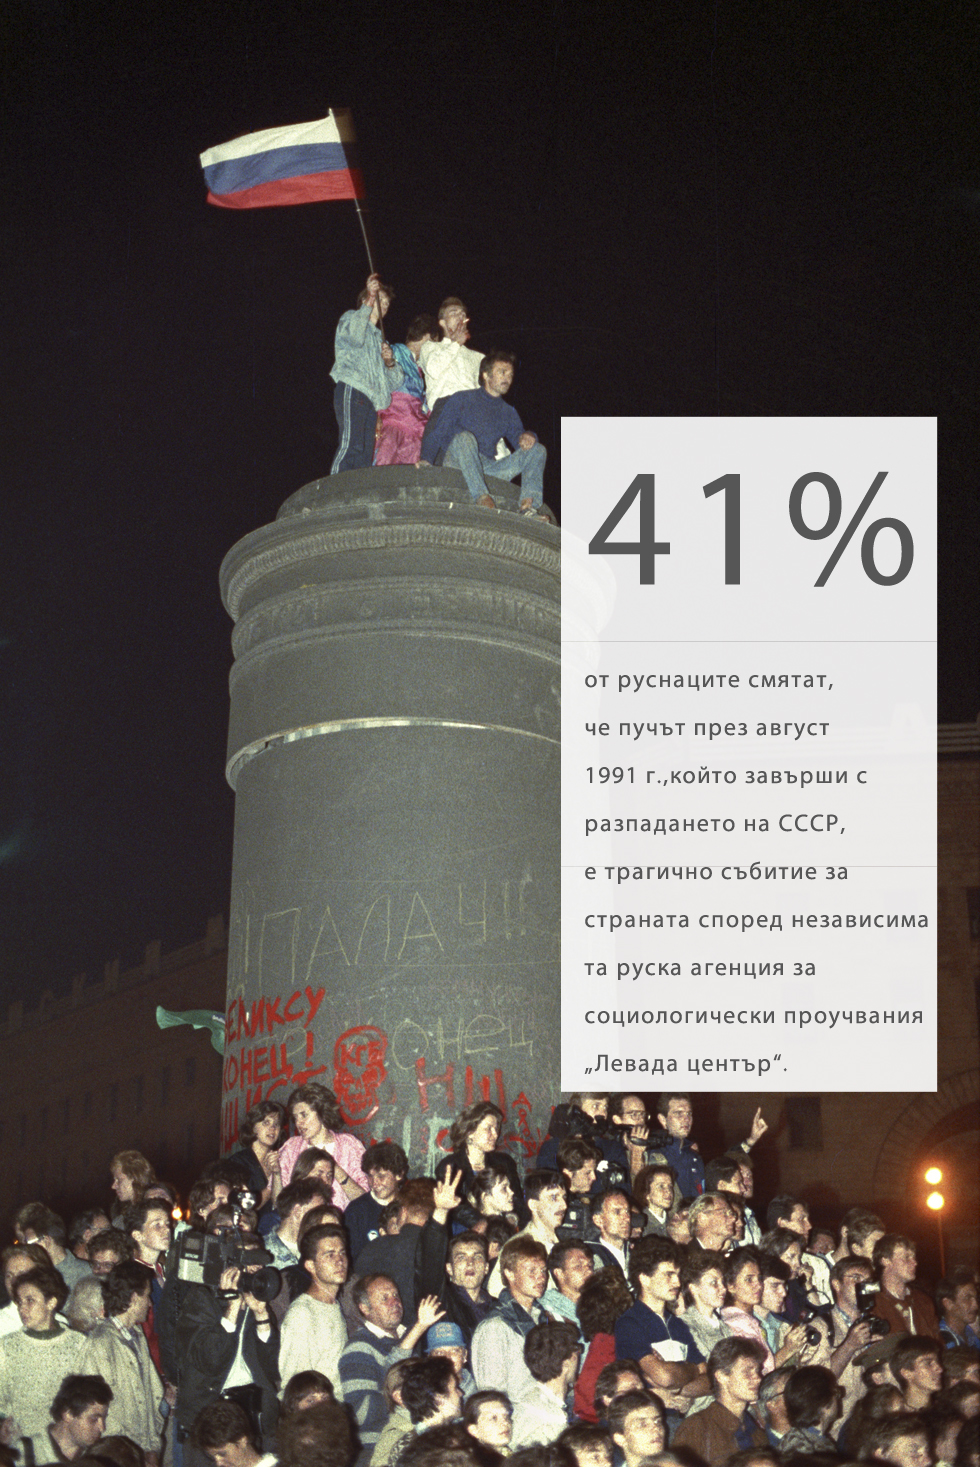 Делът им е с 14% по-голям в сравнение с 1994 г., когато повечето описваха събитията като „просто борба за власт“. Днес само 10% от анкетираните ги определят като победа за демокрацията.37% от руснаците мислят, че през 1991 г. страната е тръгнала по погрешен път.На тази снимка паметник на Феликс Дзержински, председател на Всеруската извънредна комисия – предшественик на КГБ – бива свален по време на митинг на пл. „Лубянка“ в нощта на 22 срещу 23 август, 1991 година.